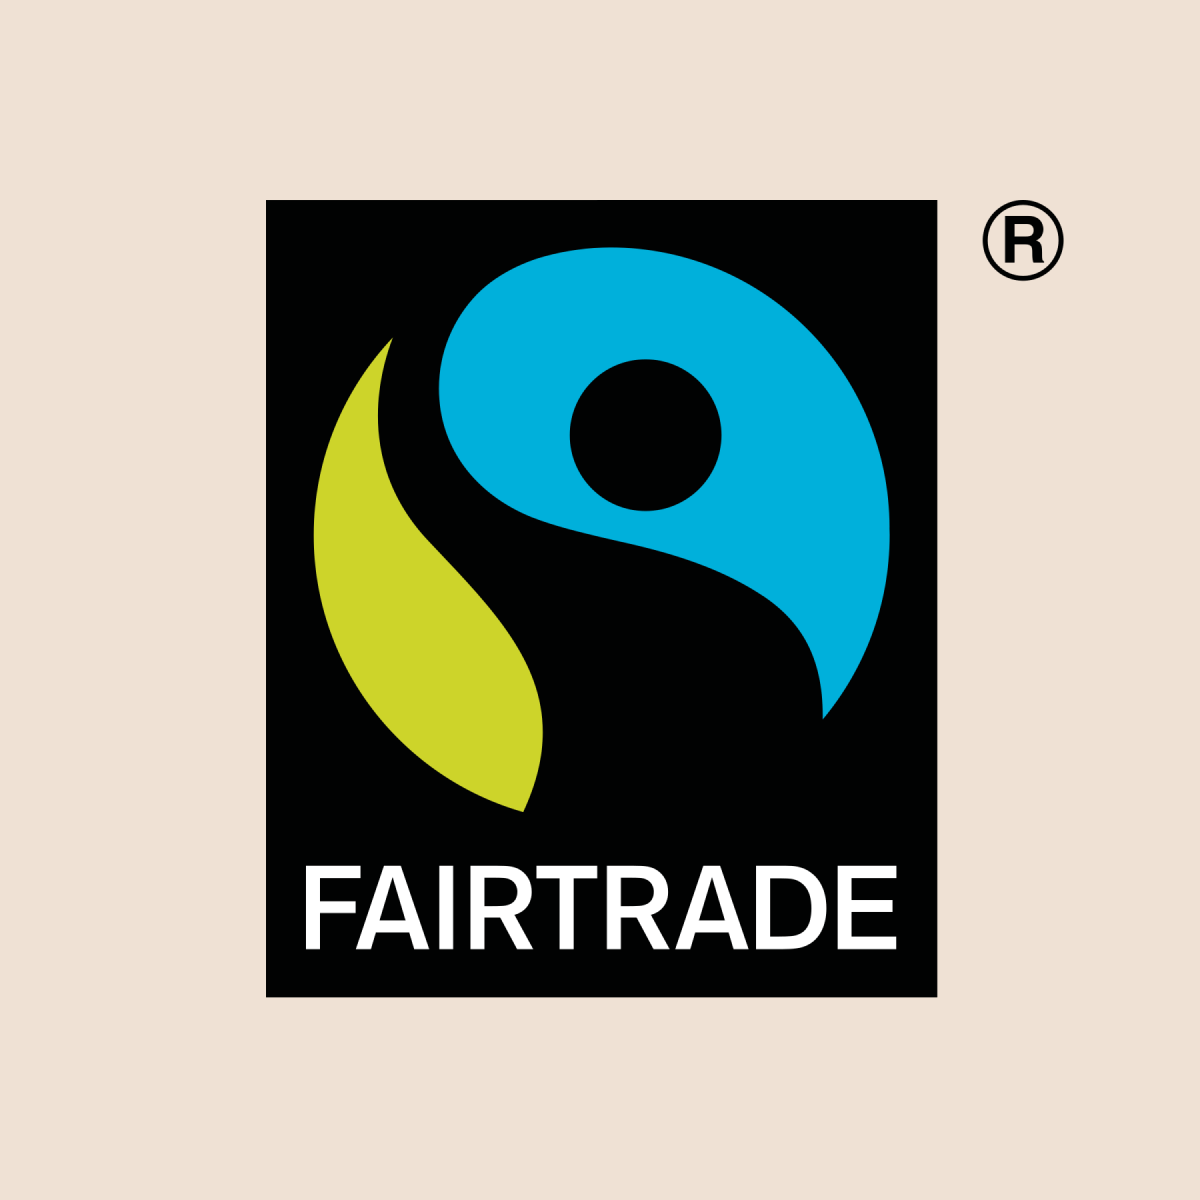 Fair trade